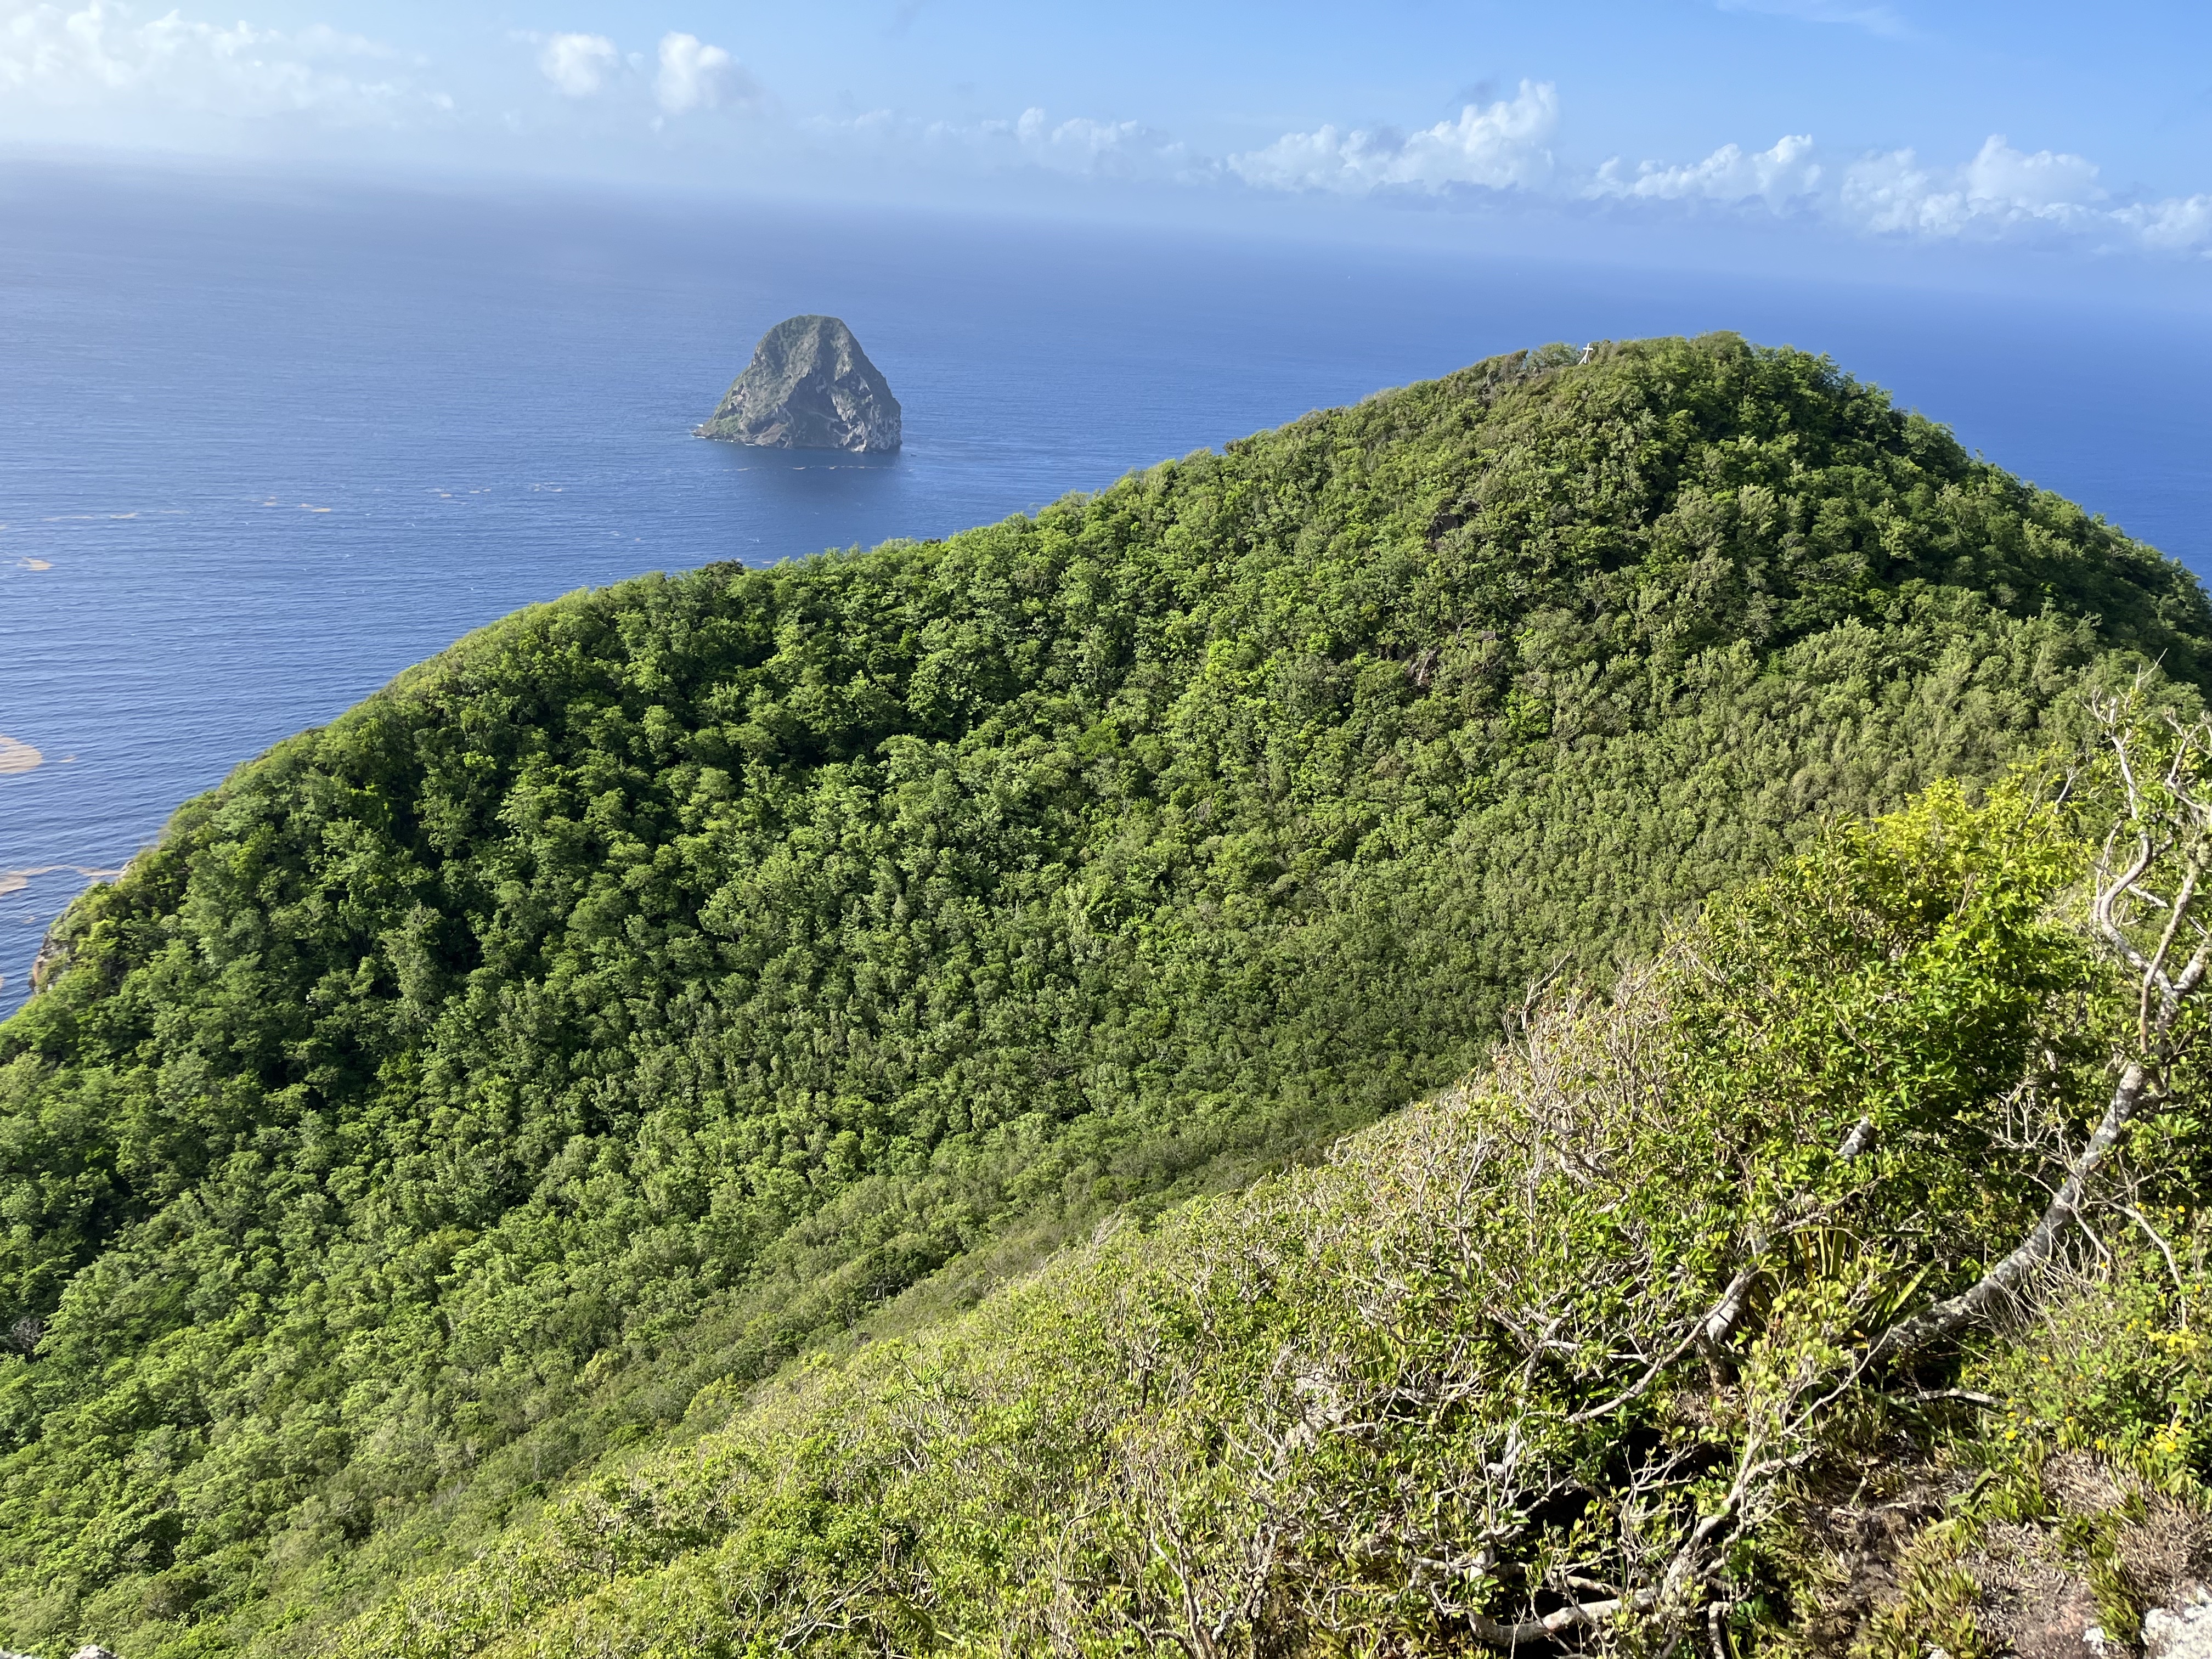     Le Comité Martiniquais du Tourisme et la Réserve de Biosphère ensemble pour valoriser « les richesses » de l’île

